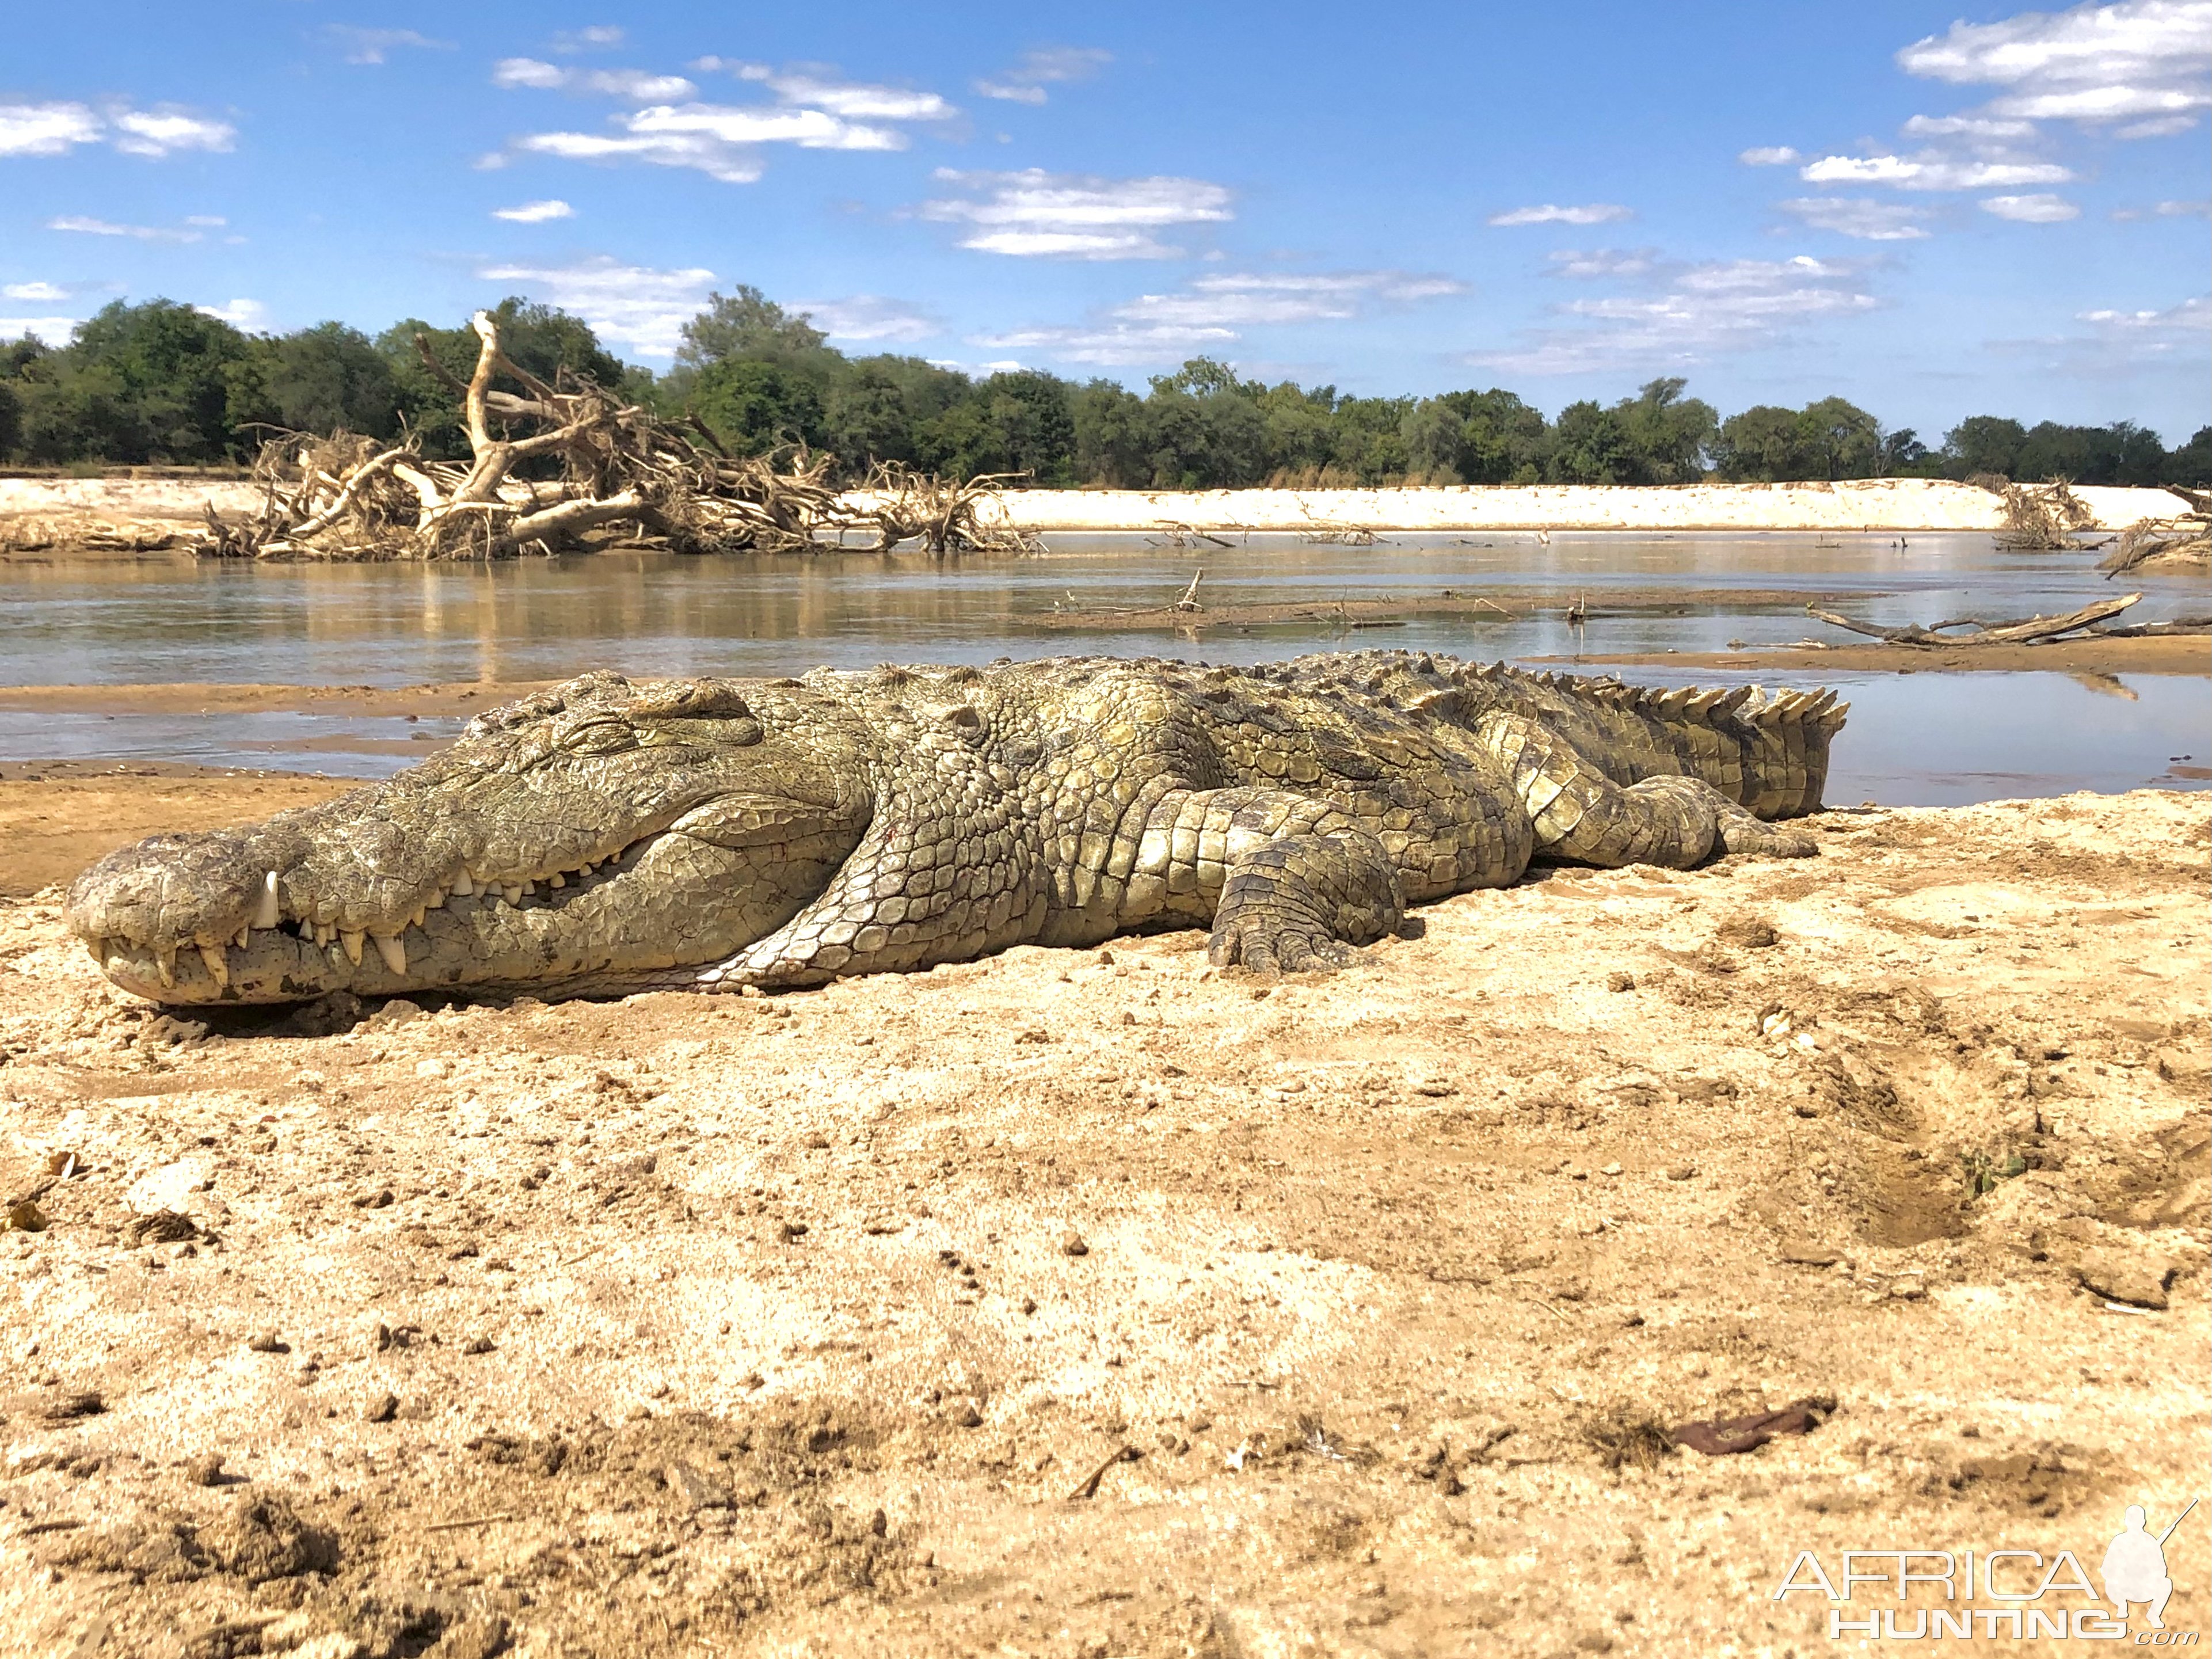 Crocodile Luangwa 2021